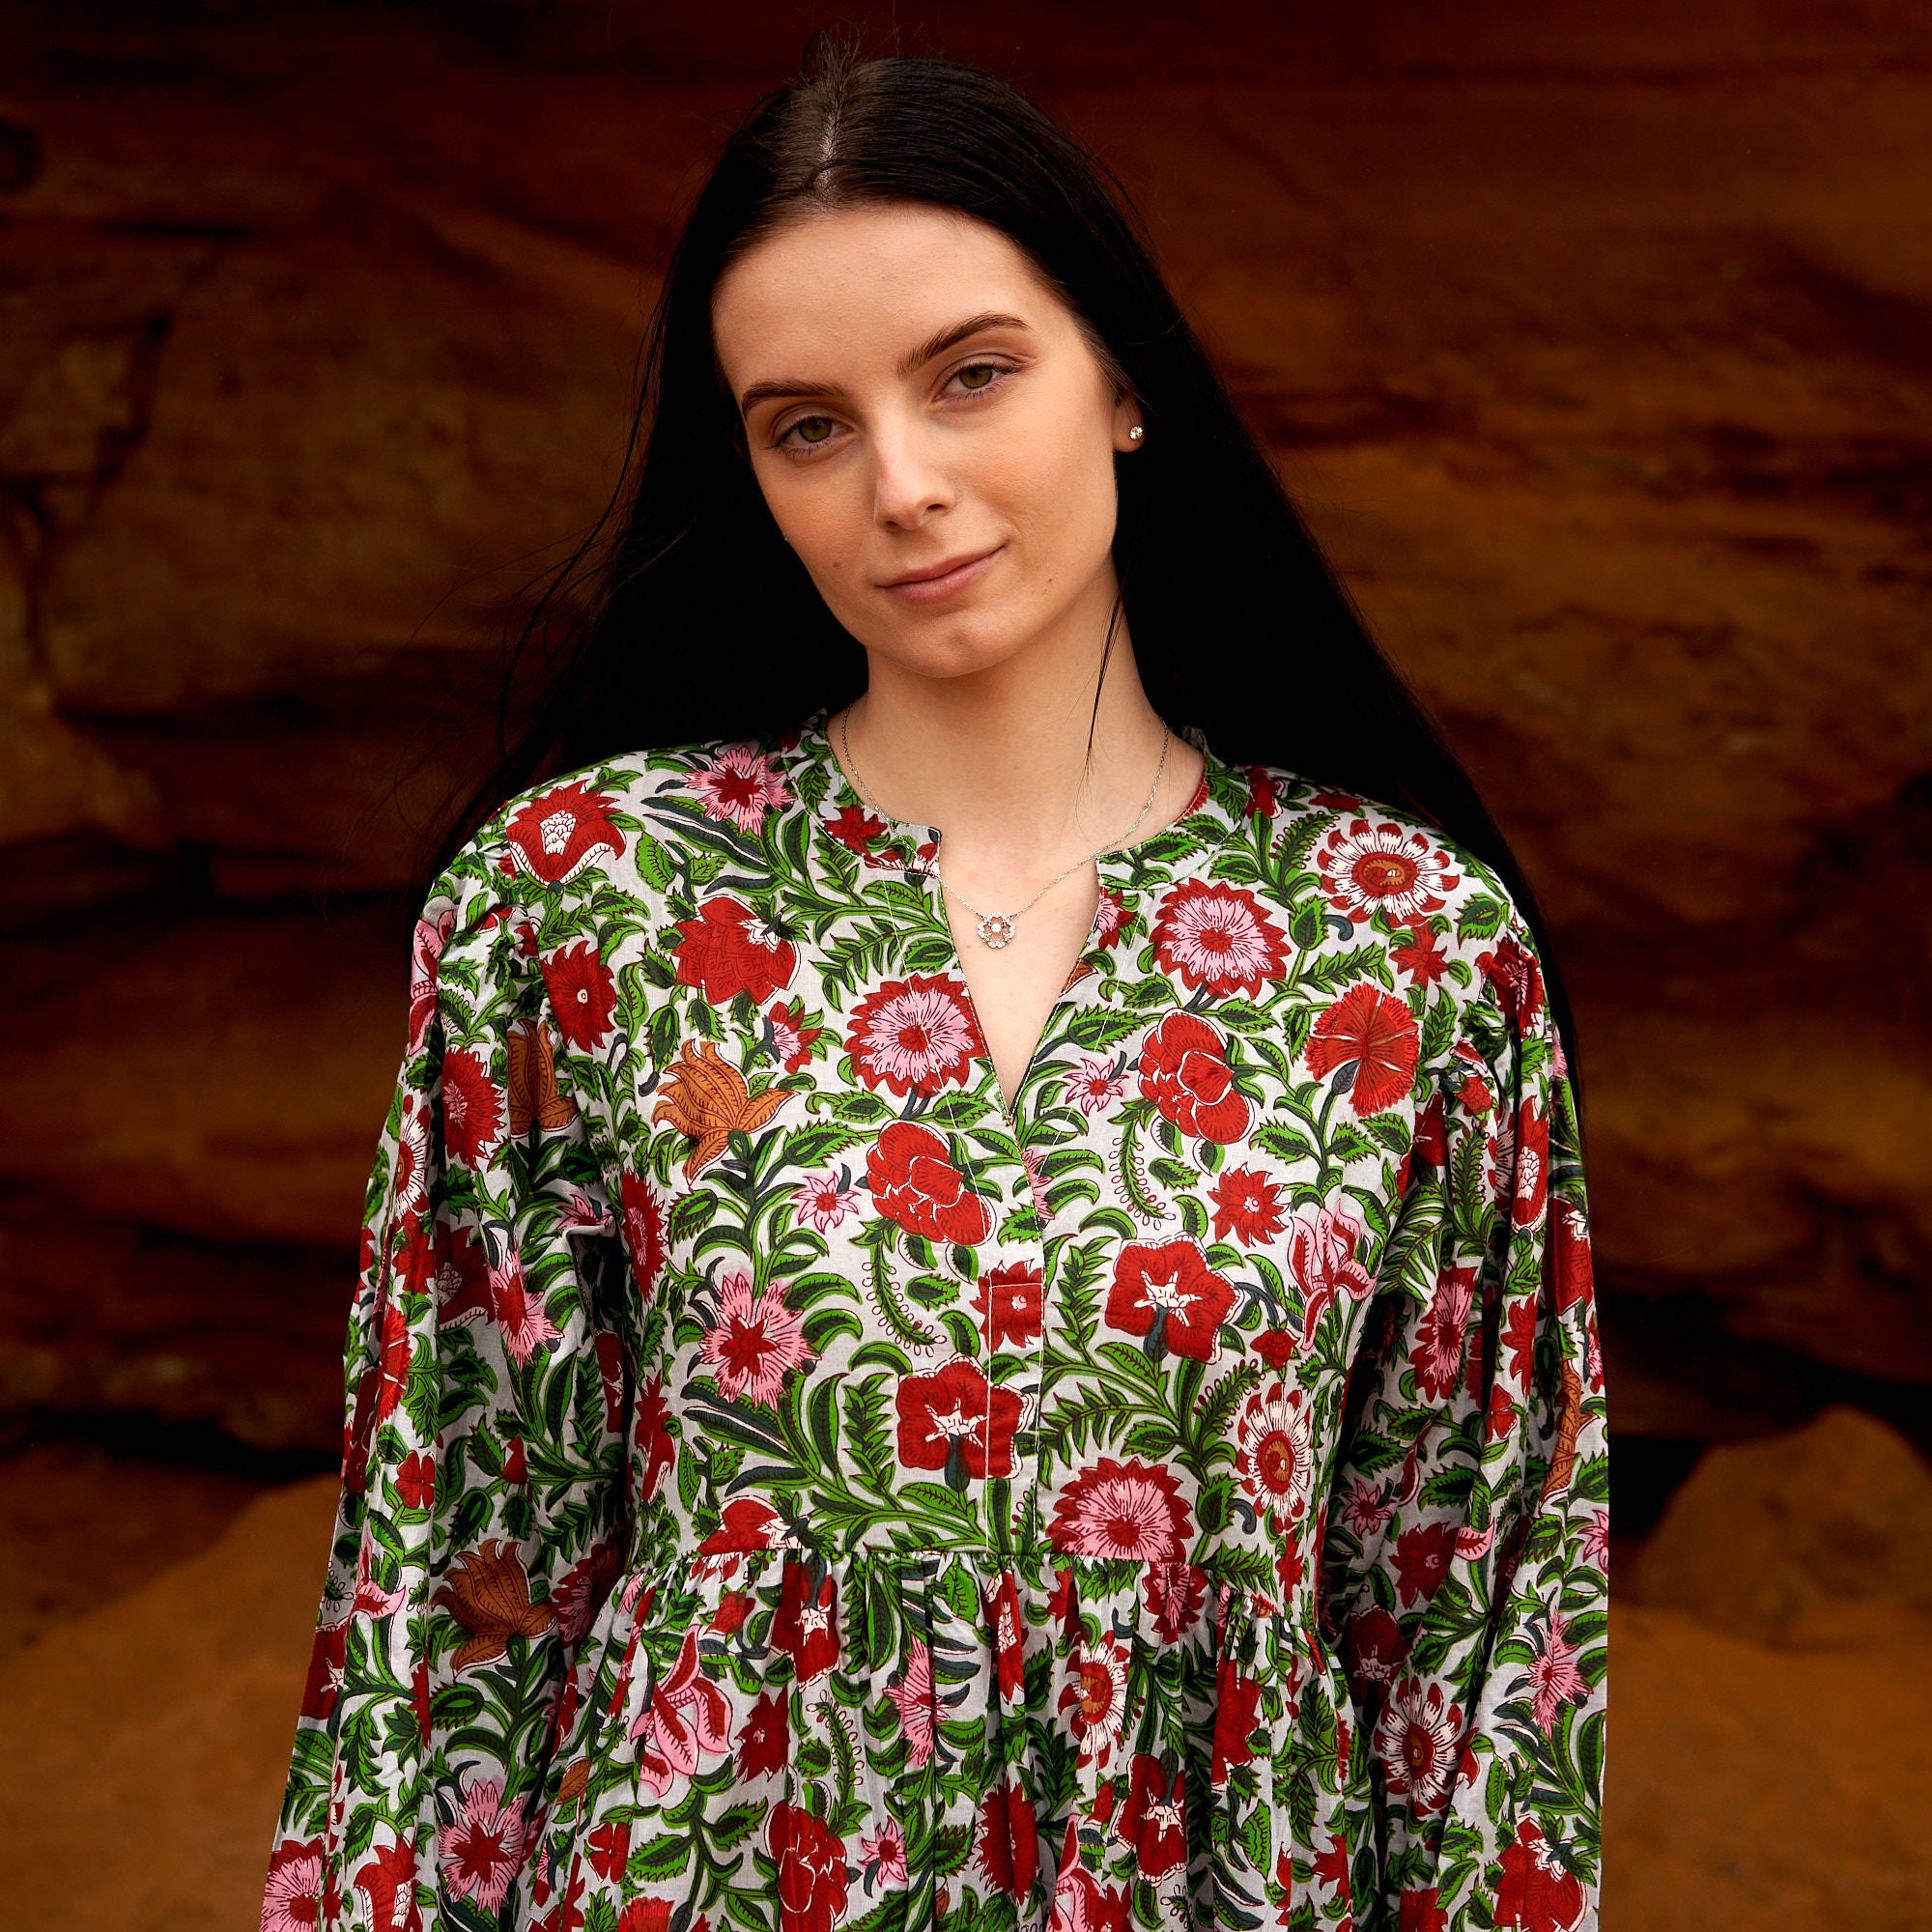 'Vermilion Blooms' 100% Cotton Maxi Dress